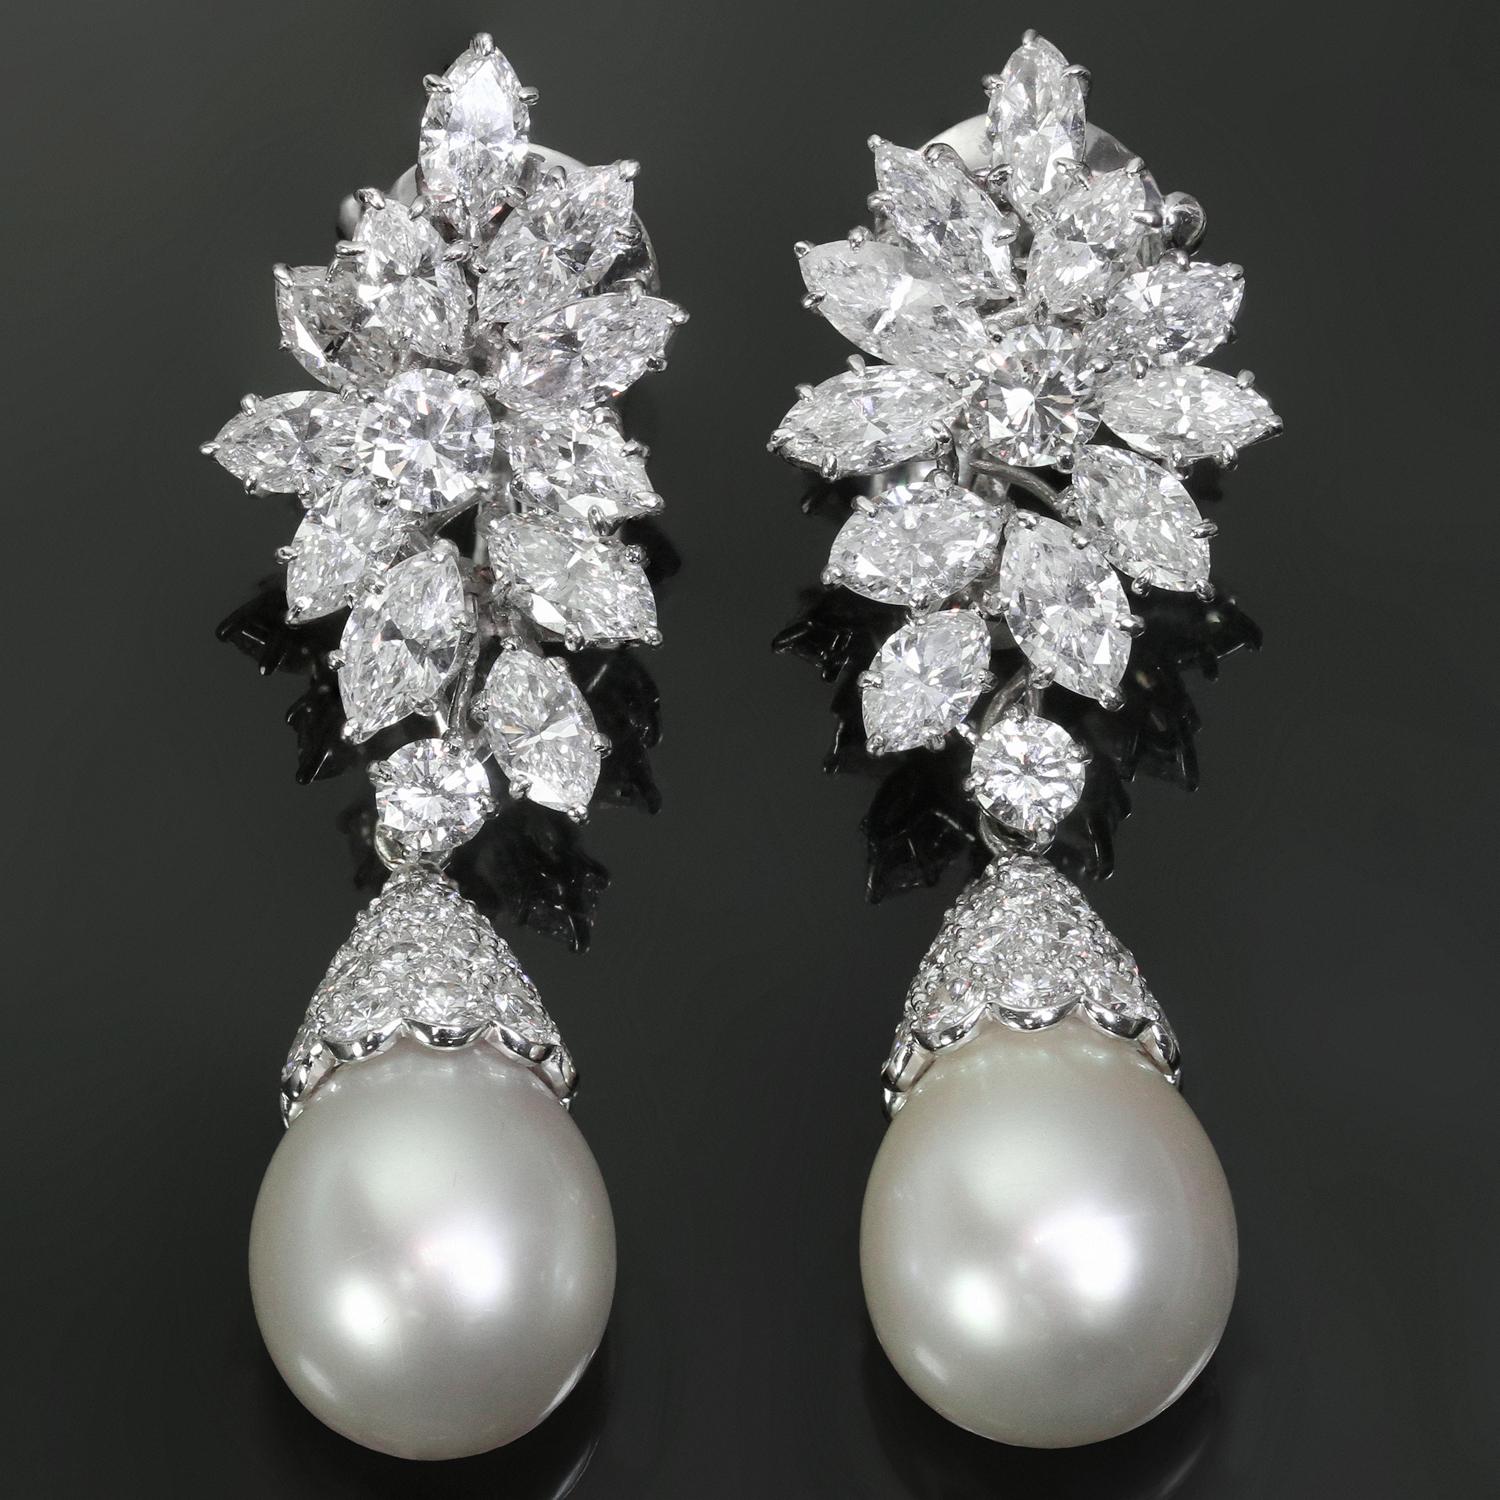 Diese prächtigen Vintage-Ohrringe von Van Cleef & Arpels mit Clipverschluss sind aus Platin gefertigt und haben wunderschöne abnehmbare Tropfen. Die Ohrringe sind mit 2 runden Diamanten mit einem geschätzten Gewicht von 1,0 Karat, 2 kleineren runden